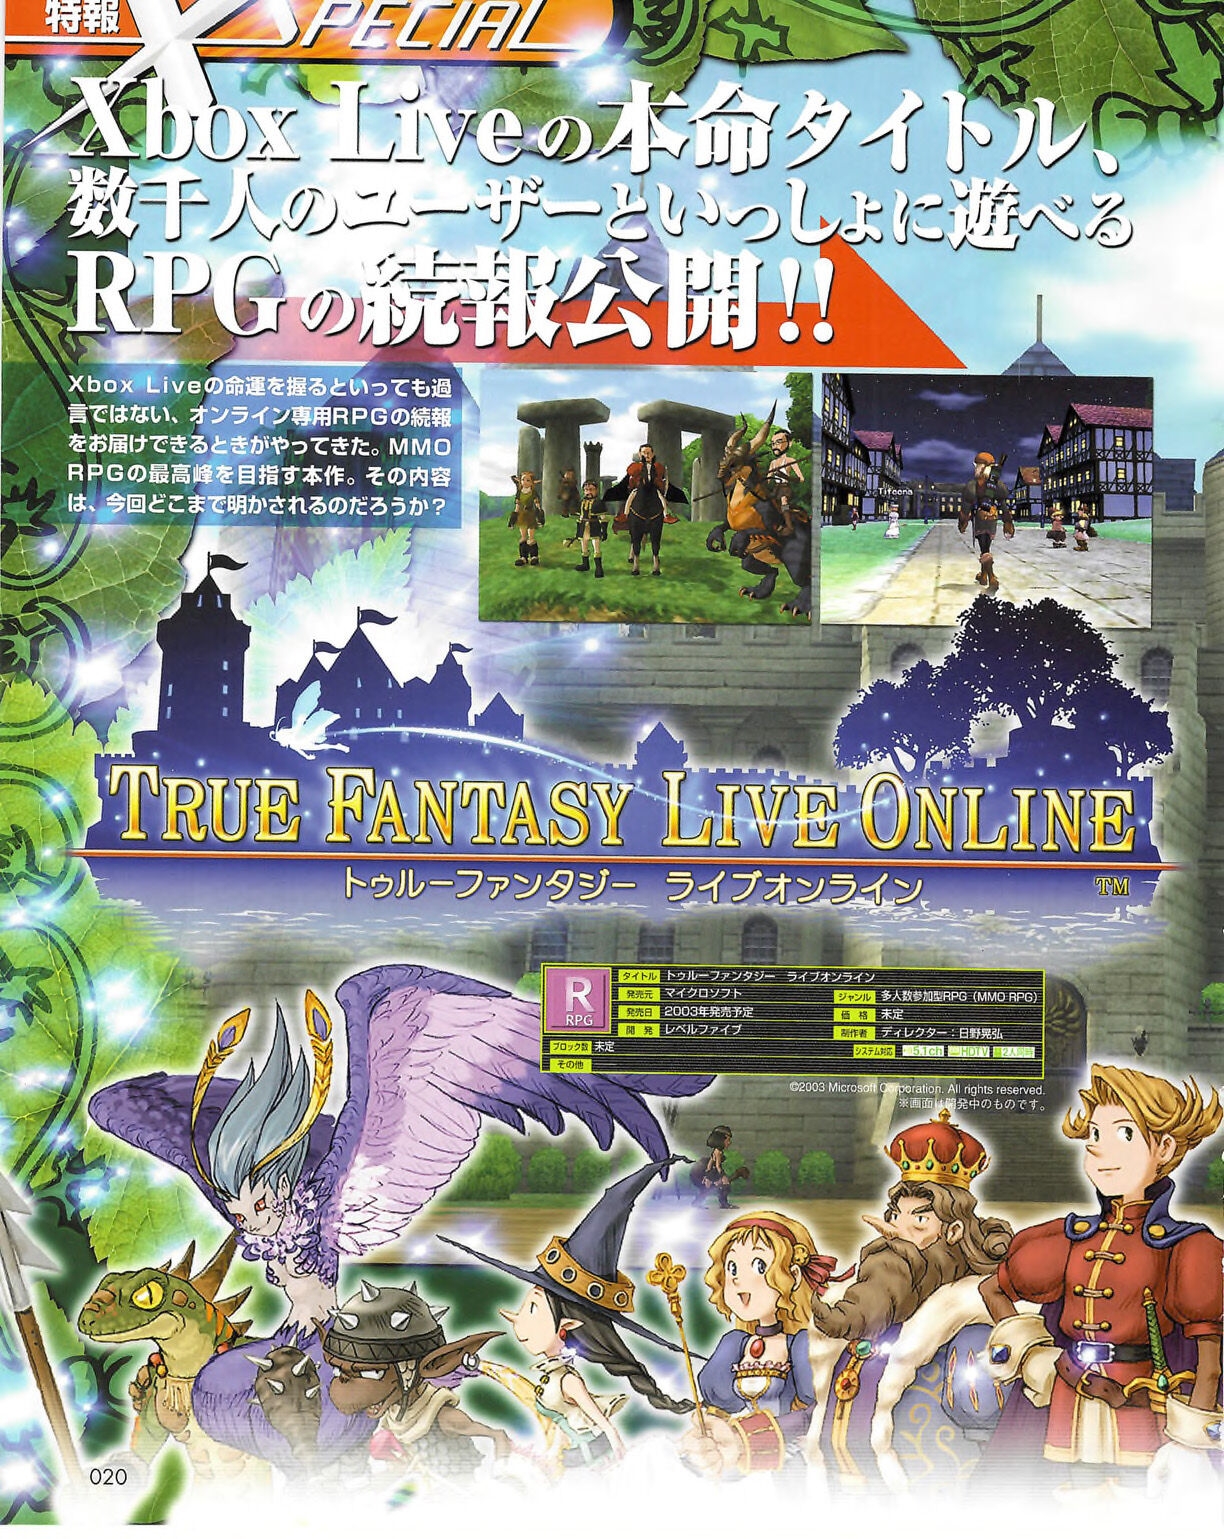 Famitsu_Xbox_2003-04_jp2 19